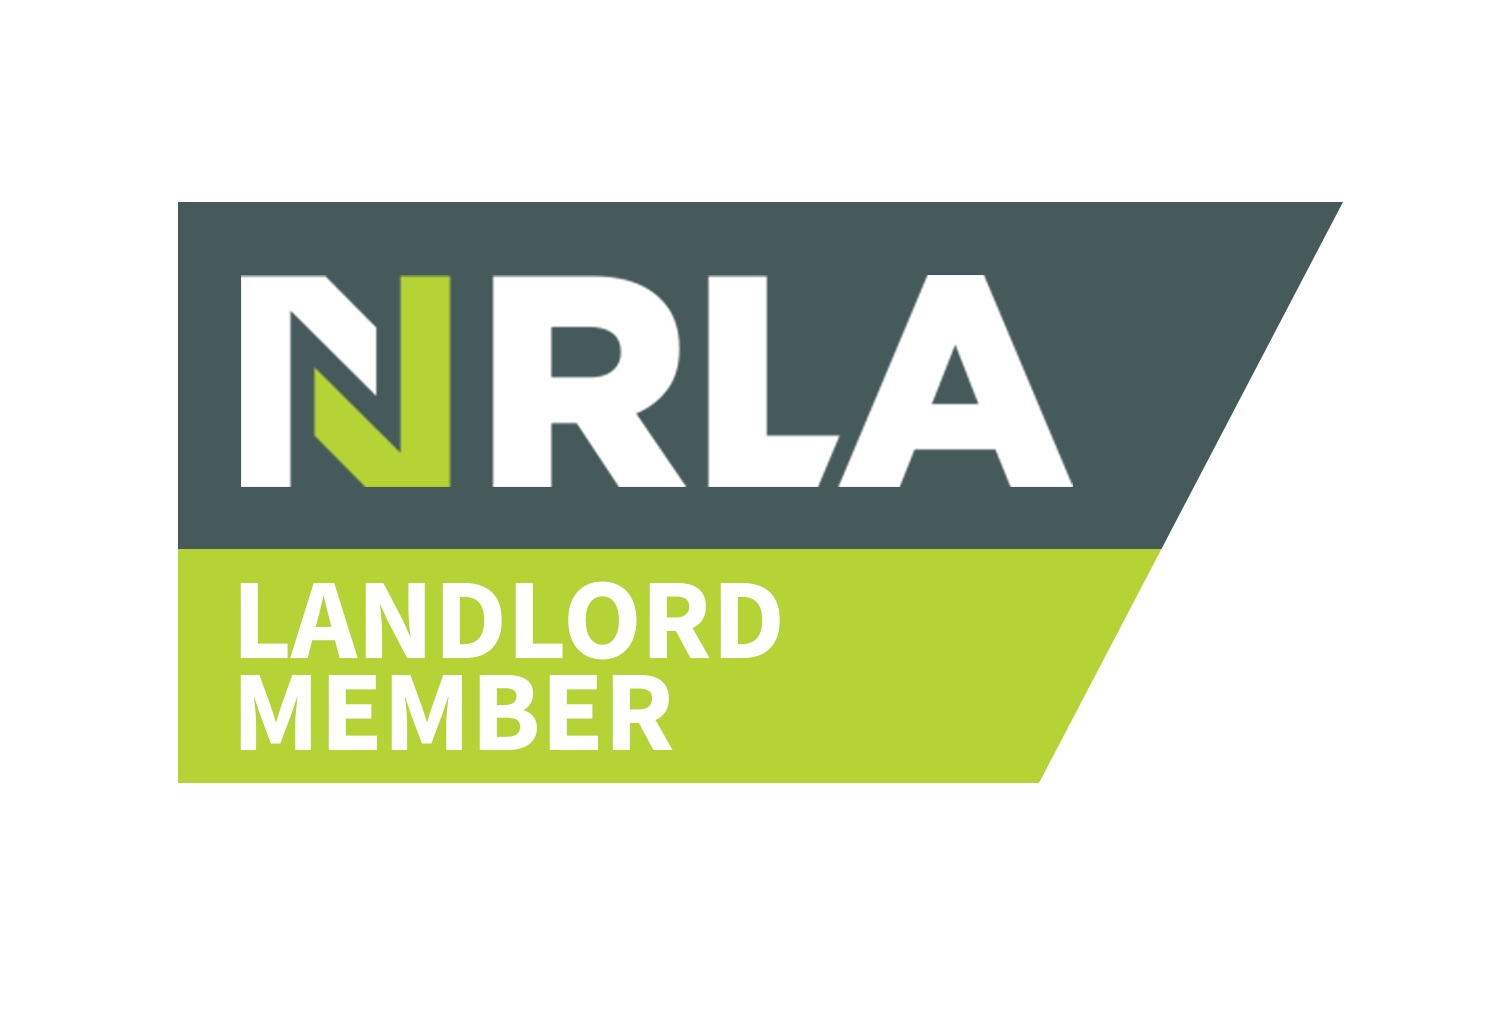 nrla-members-logo